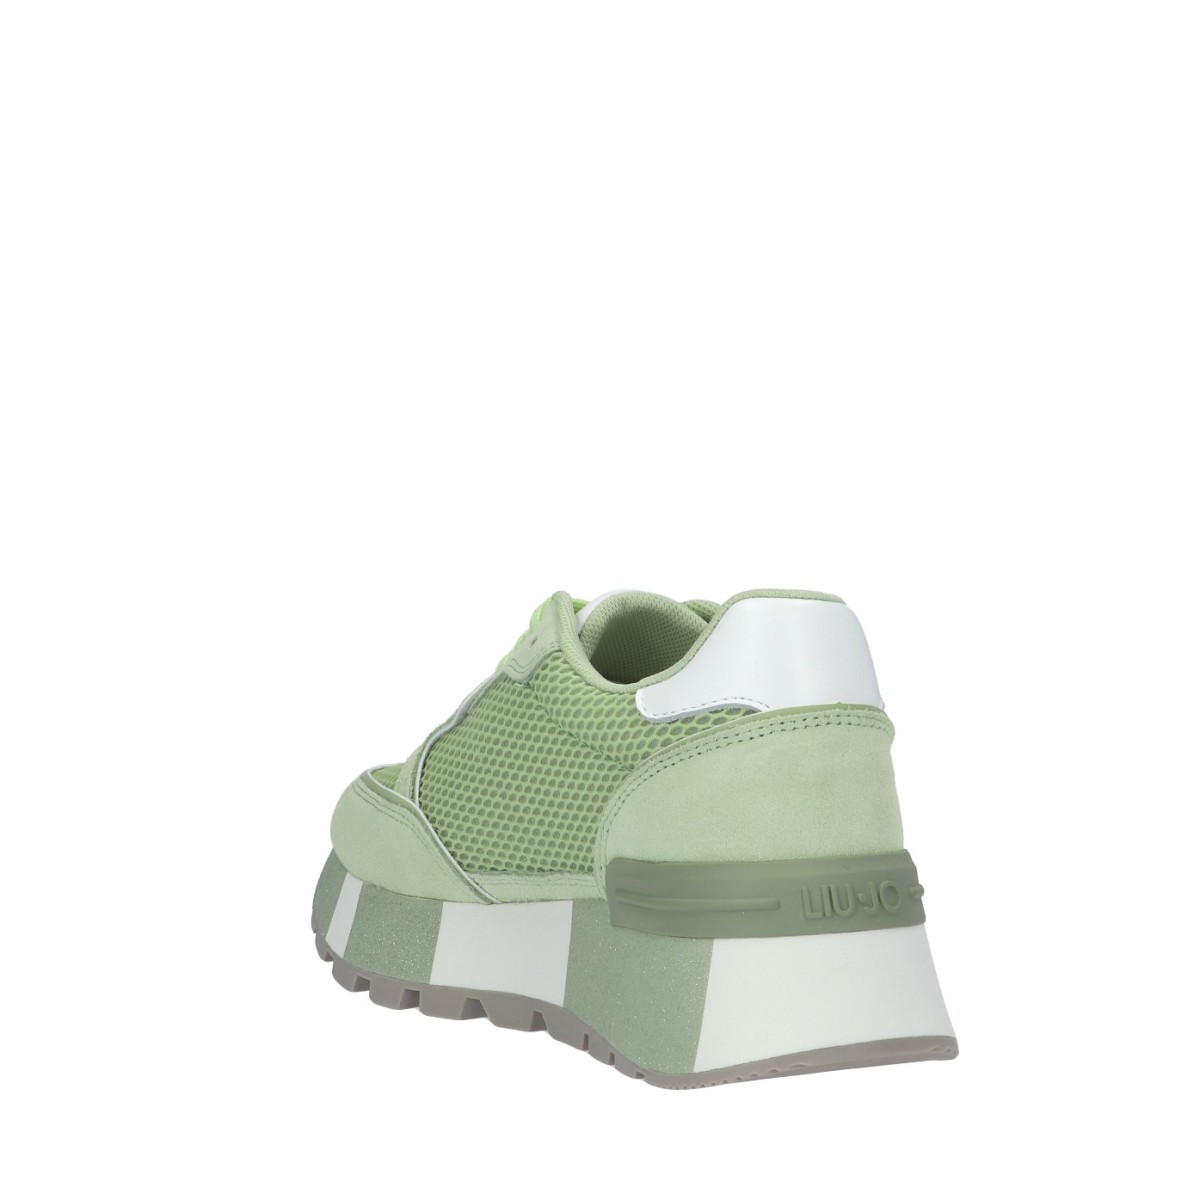 Liu jo Sneaker Verde Gomma BA4005PX303